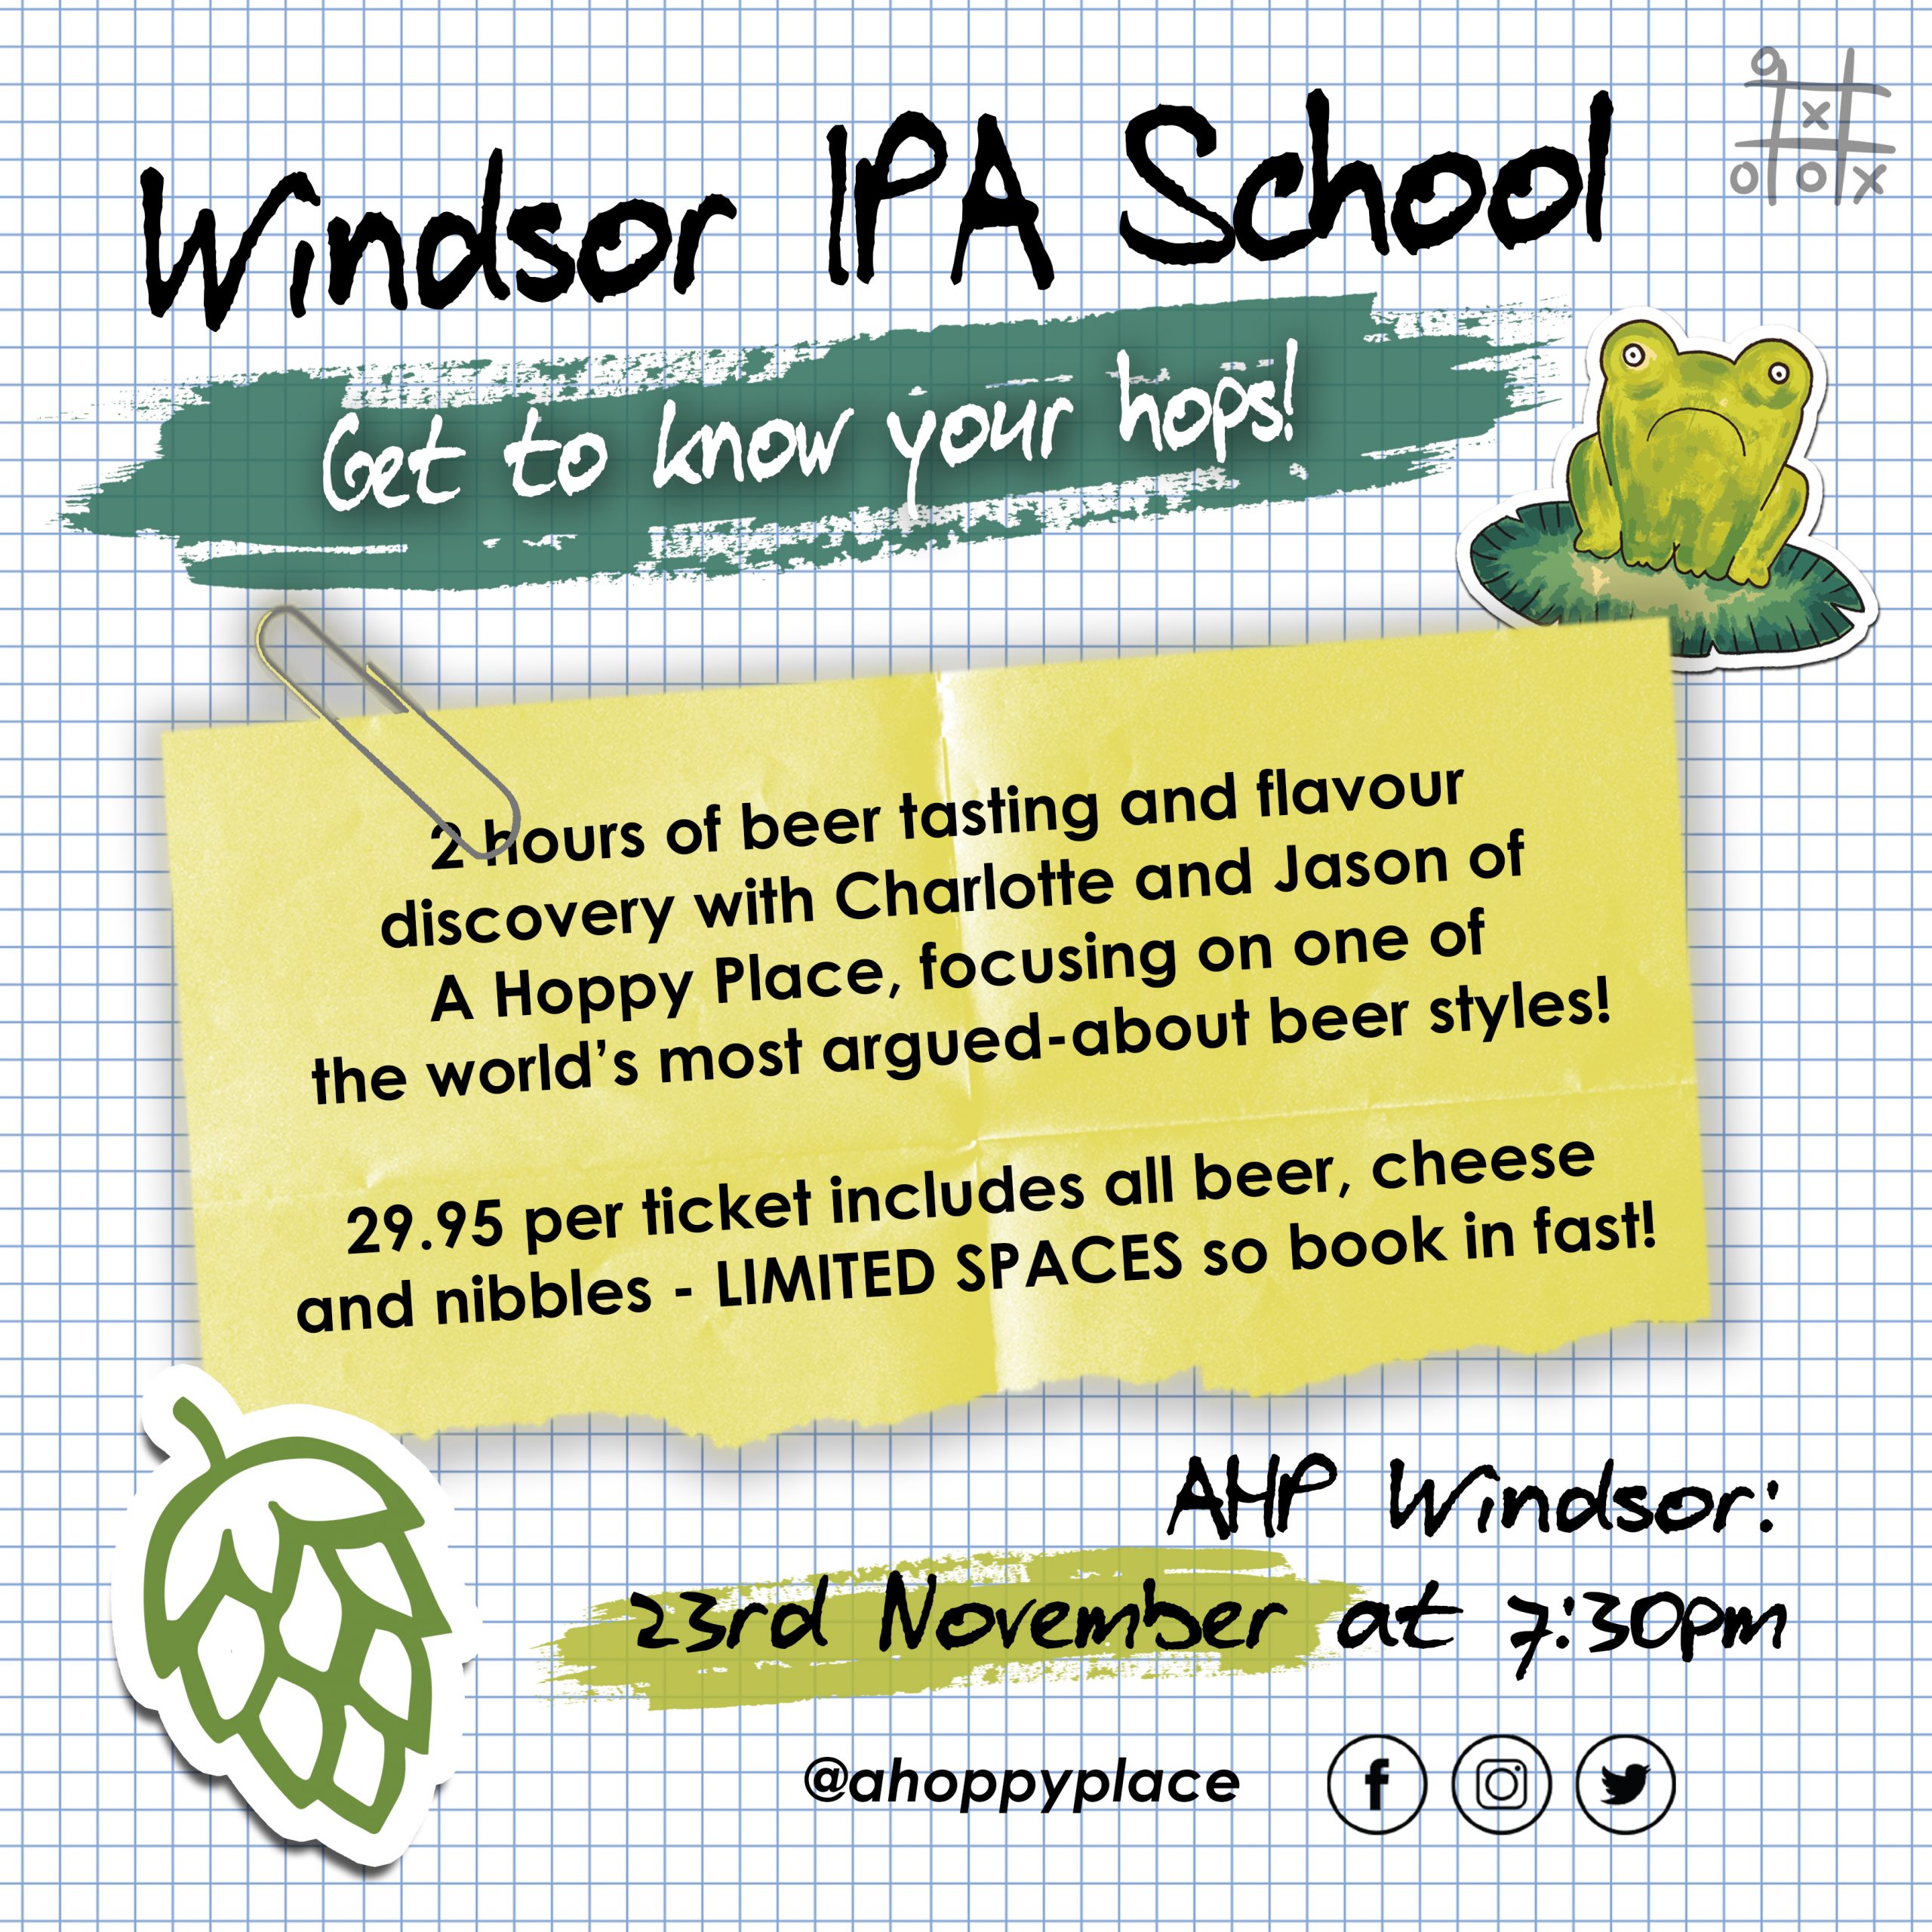 Beer School - Windsor. Thursday November 23rd